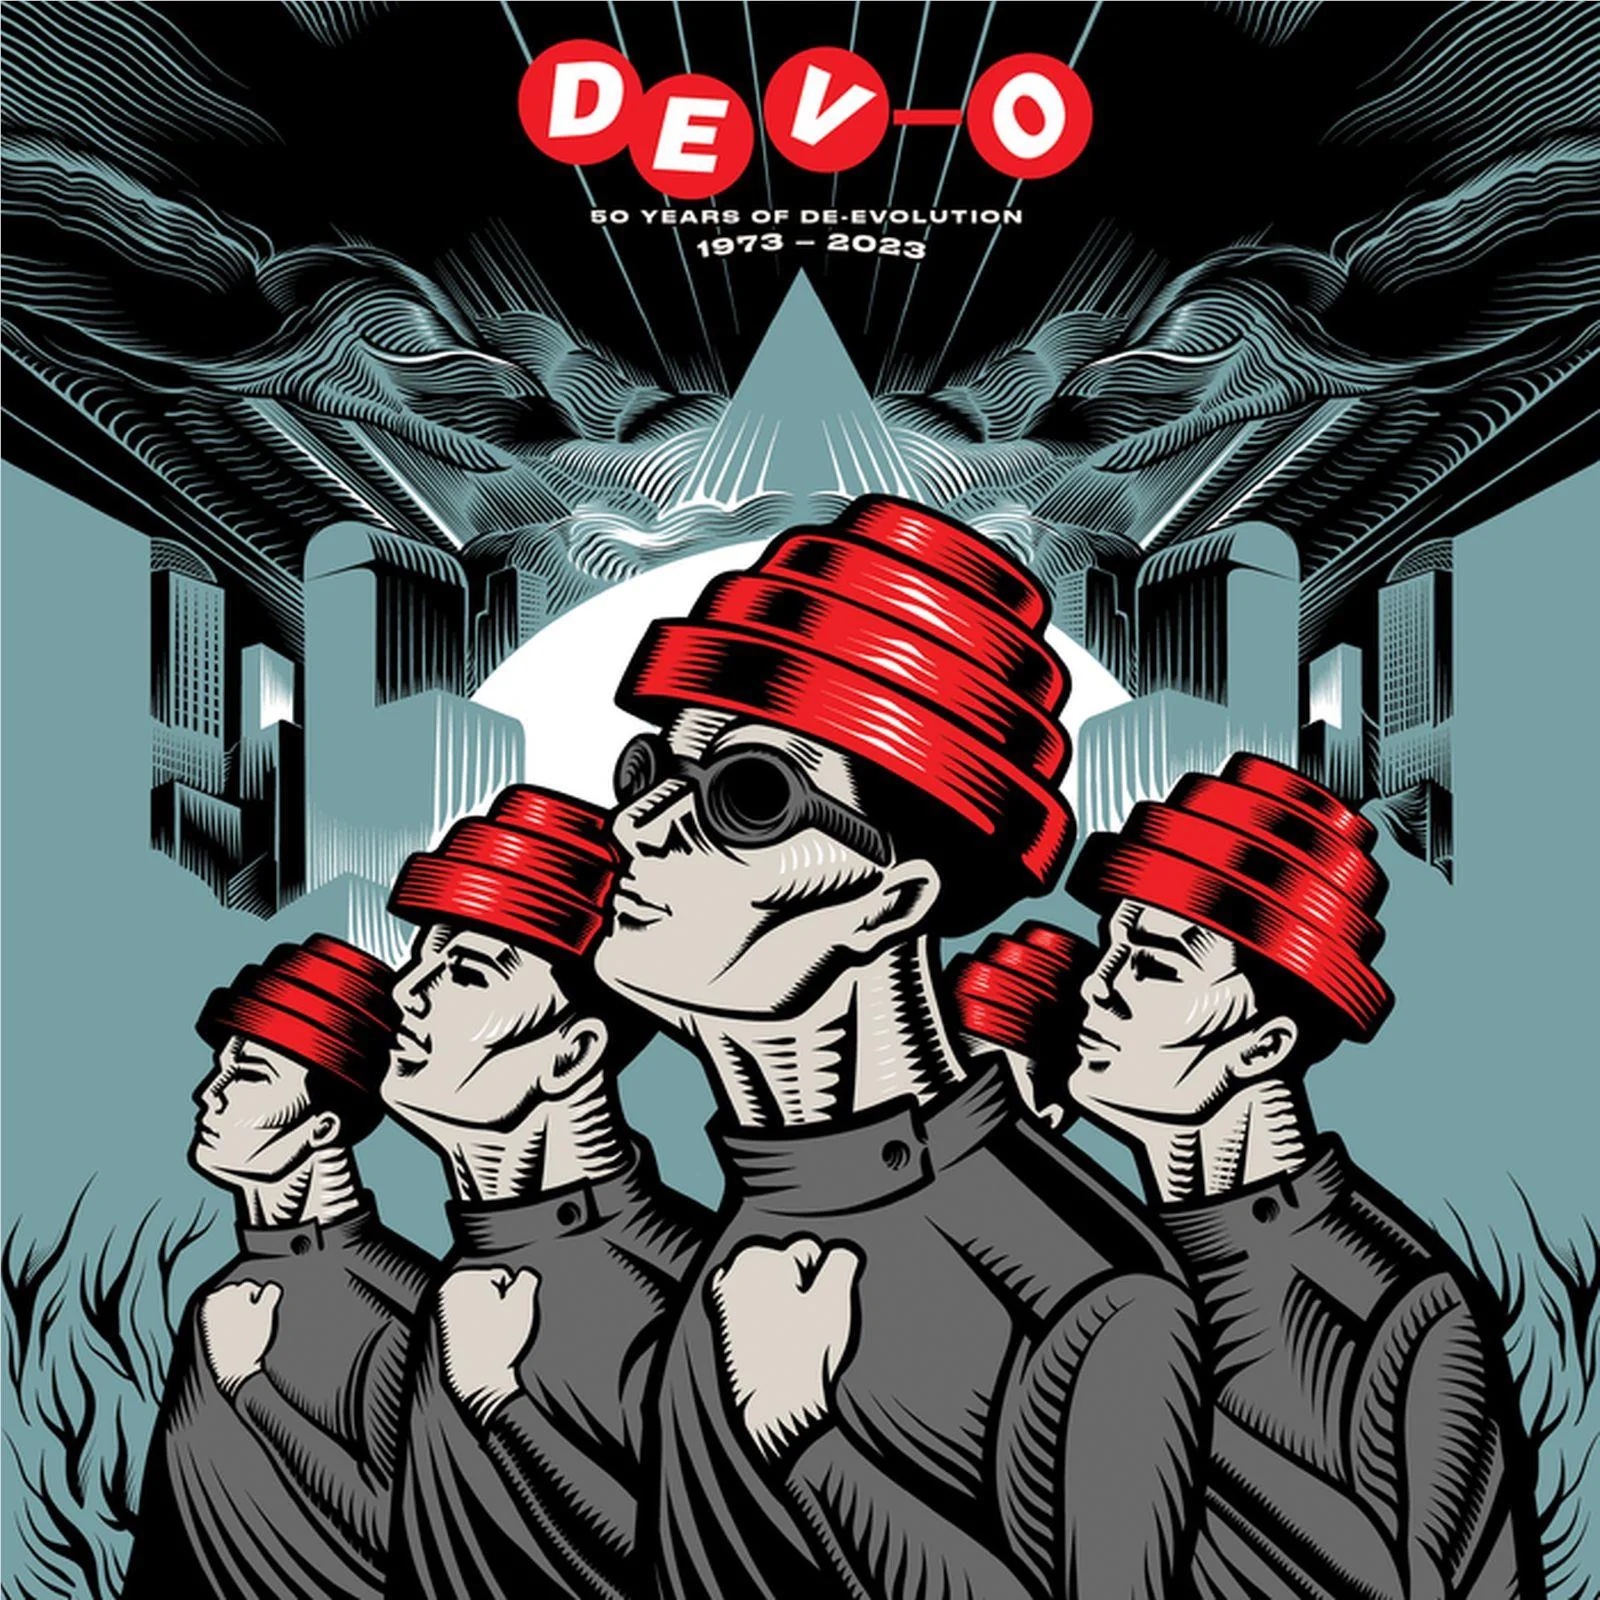 Devo – 50 Years Of De-Evolution 1973-2023